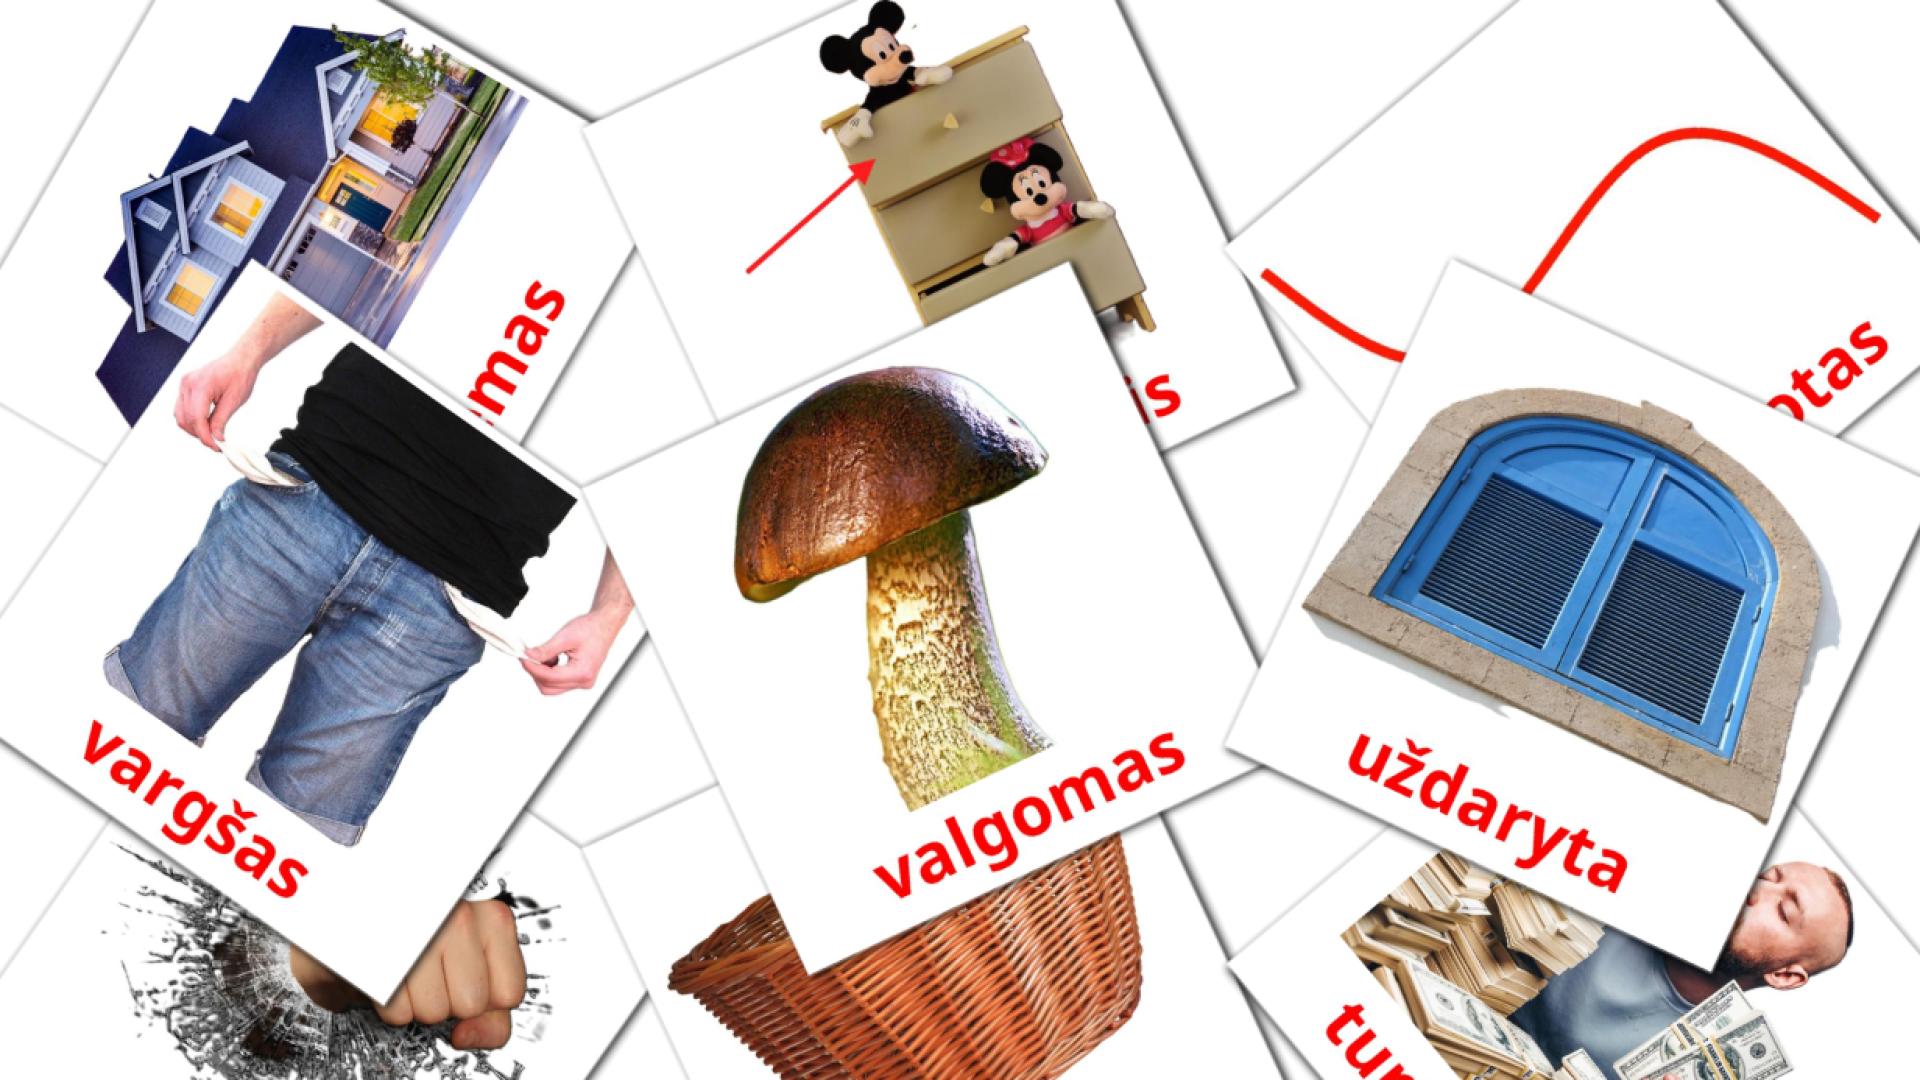 būdvardžiai lithuanian vocabulary flashcards